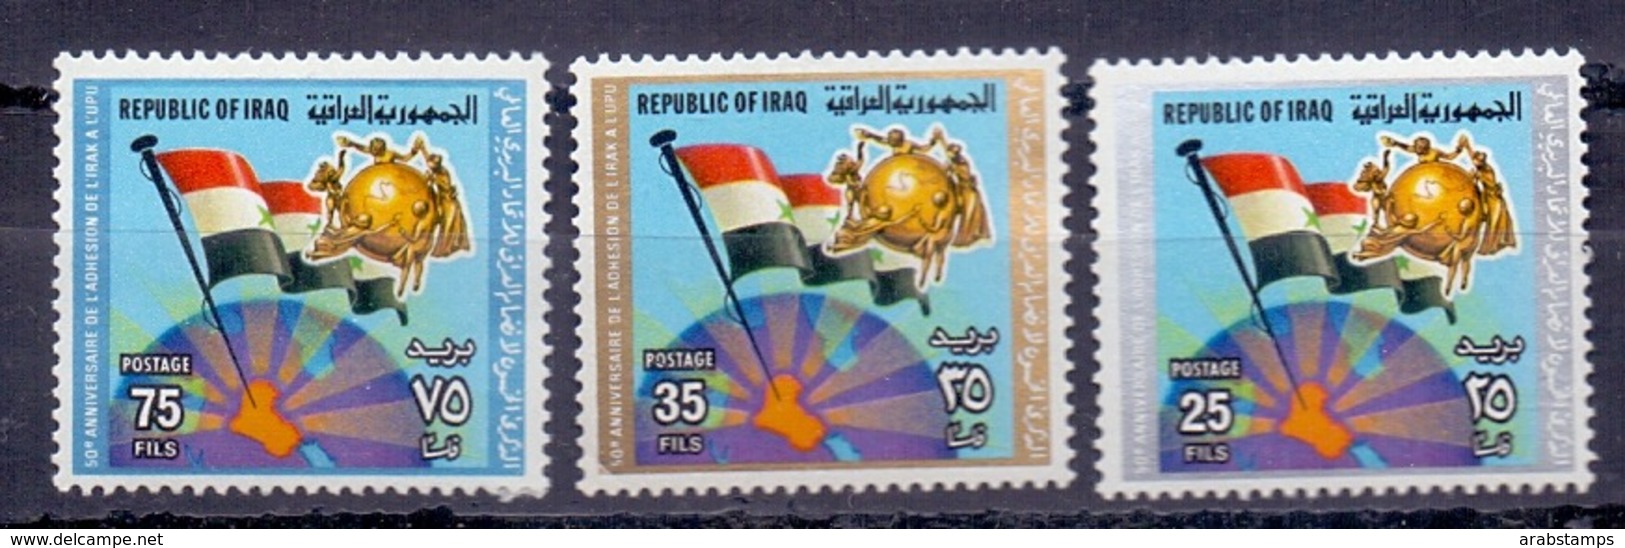 1979 IRAQ Complete Set 3 Values MNH S.G.No.1385-1387 - Iraq